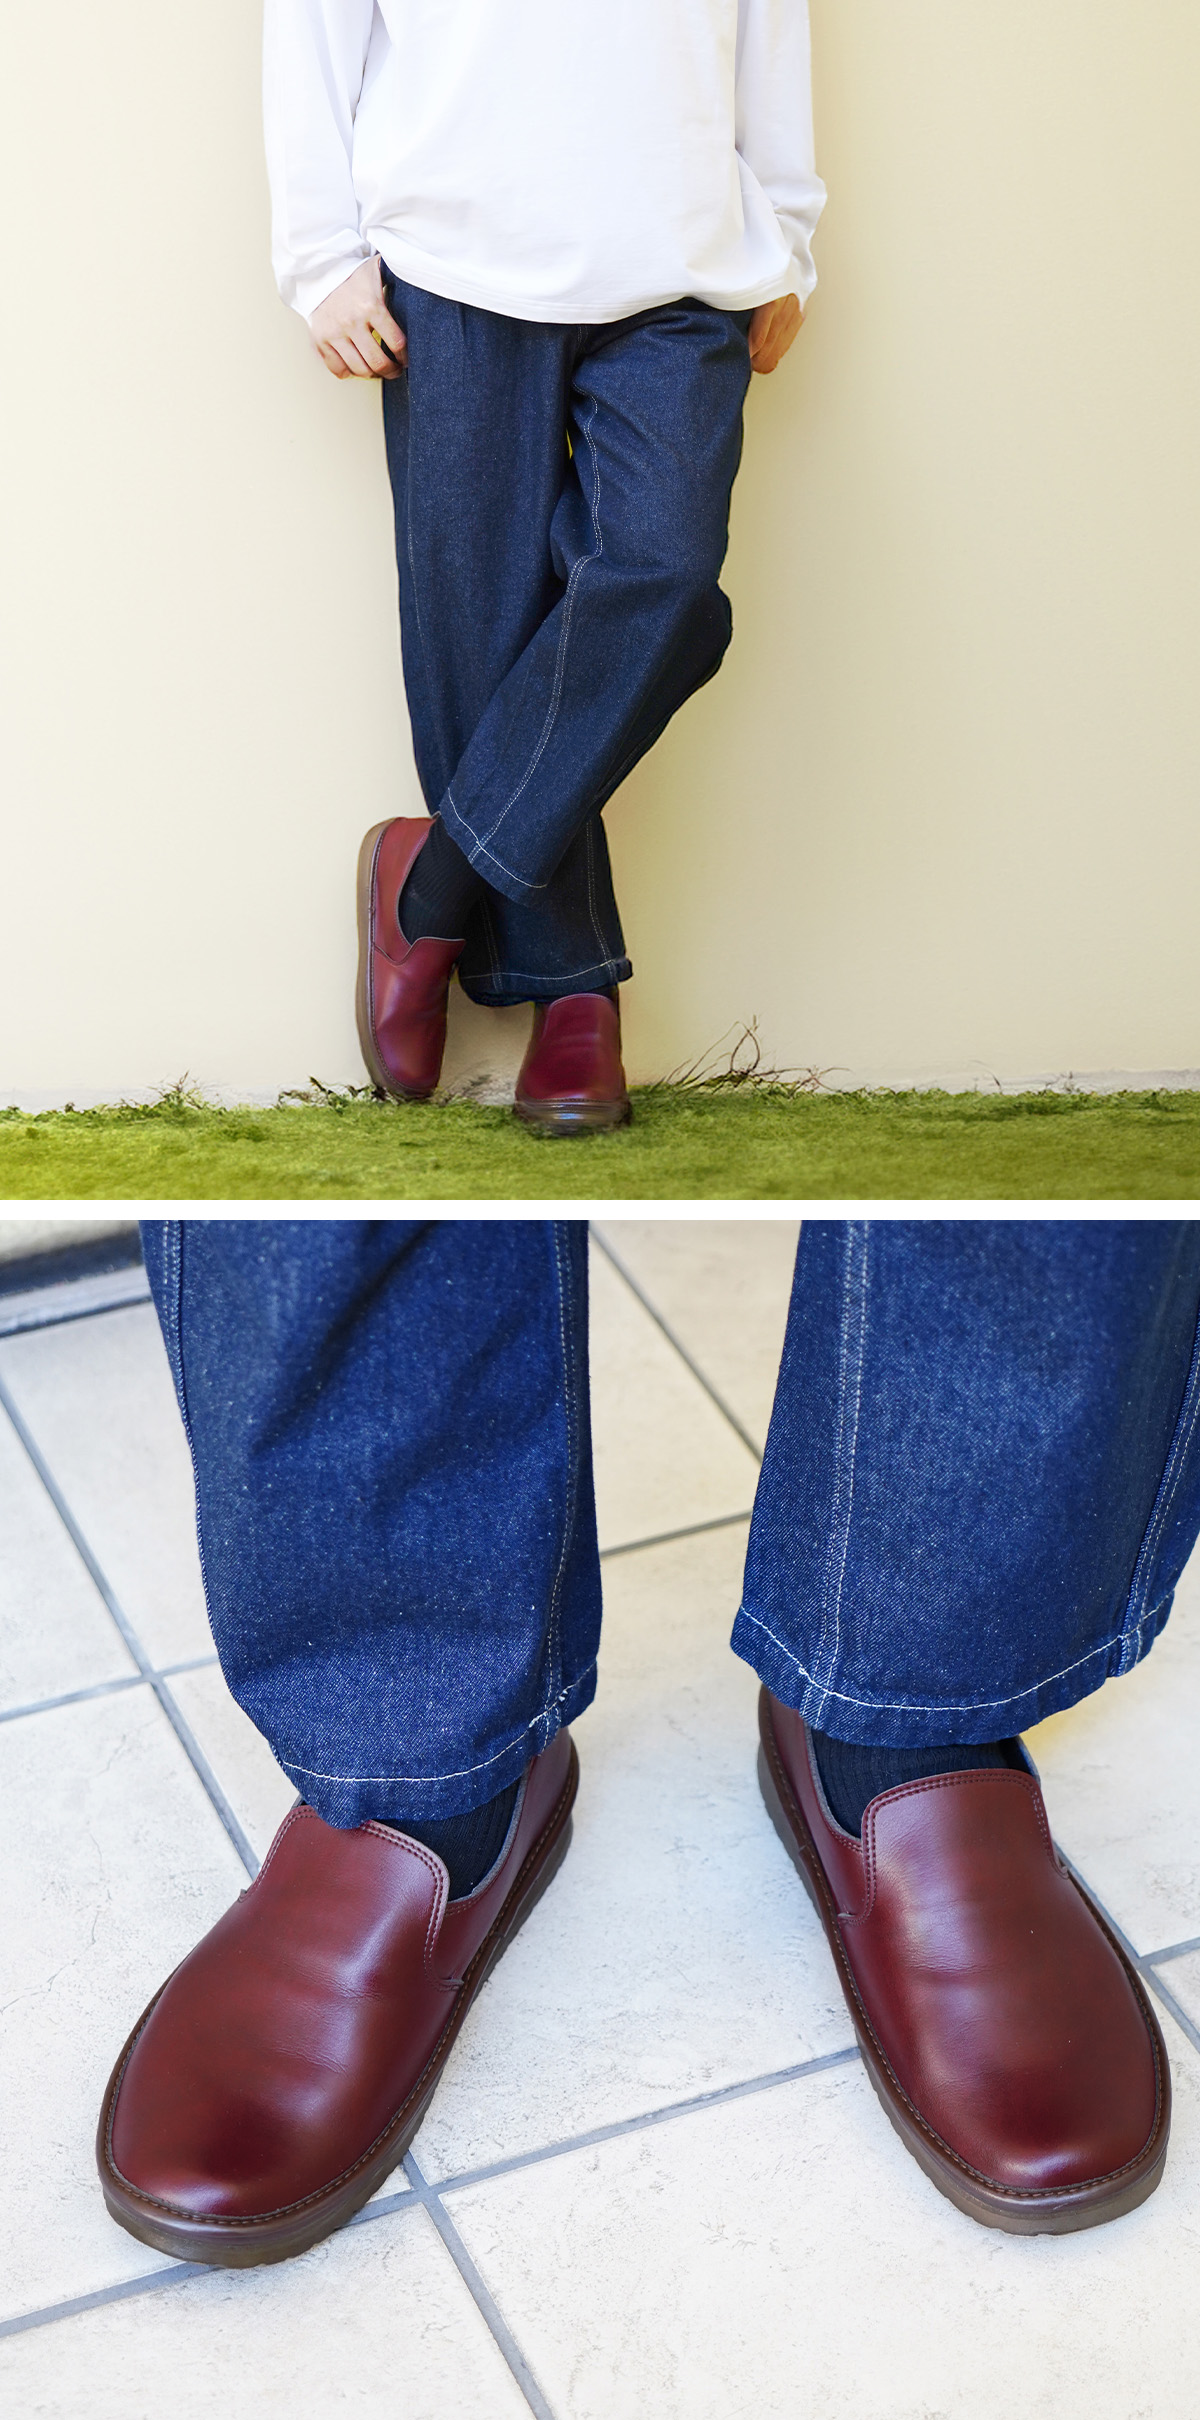 メンズ フラットシューズ スリッポン 靴 柔らかい 歩きやすい 疲れにくい コンフォートインソール ヴィーガンレザー 軽量 立ったまま 手を使わず 履ける 楽に履ける ハンズフリー シンプル 仕事 日本製 デコ MDECO